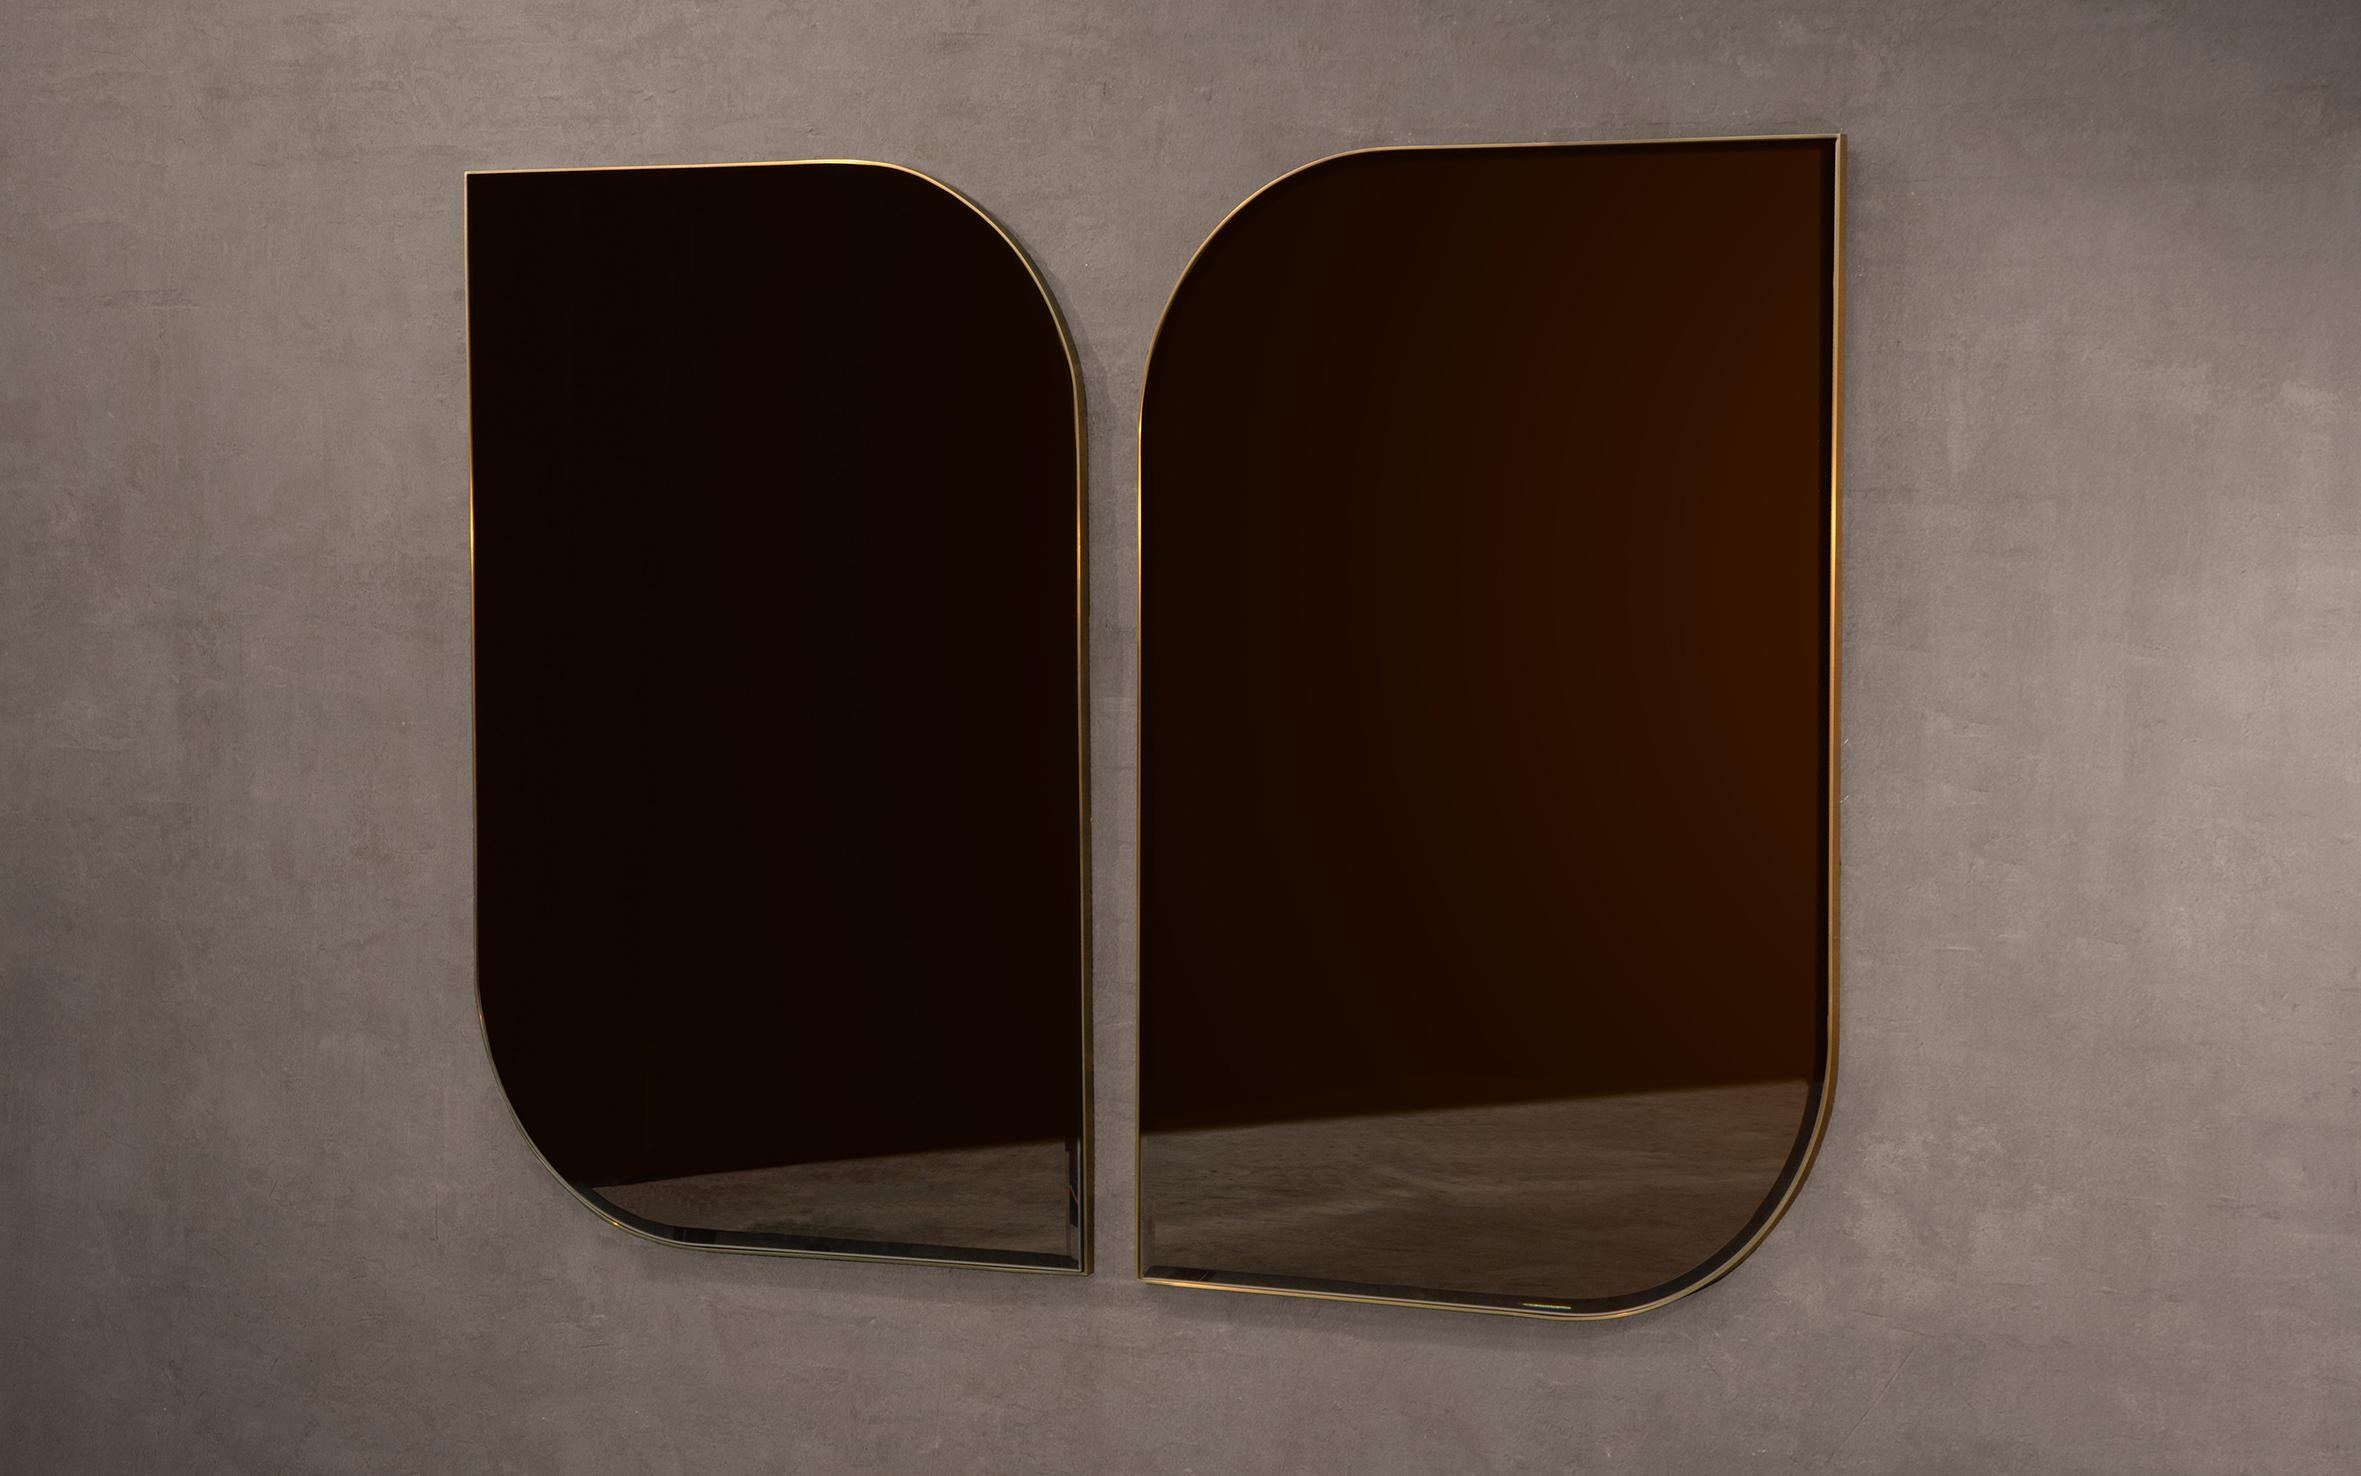 Ein handgefertigter Wandspiegel aus poliertem Messing und geschliffenem, bronzefarben getöntem Glas. Erhältlich als Links- und Rechtshändervariante für die Möglichkeit, zwei miteinander zu koppeln.

Kann sowohl im Hoch- als auch im Querformat